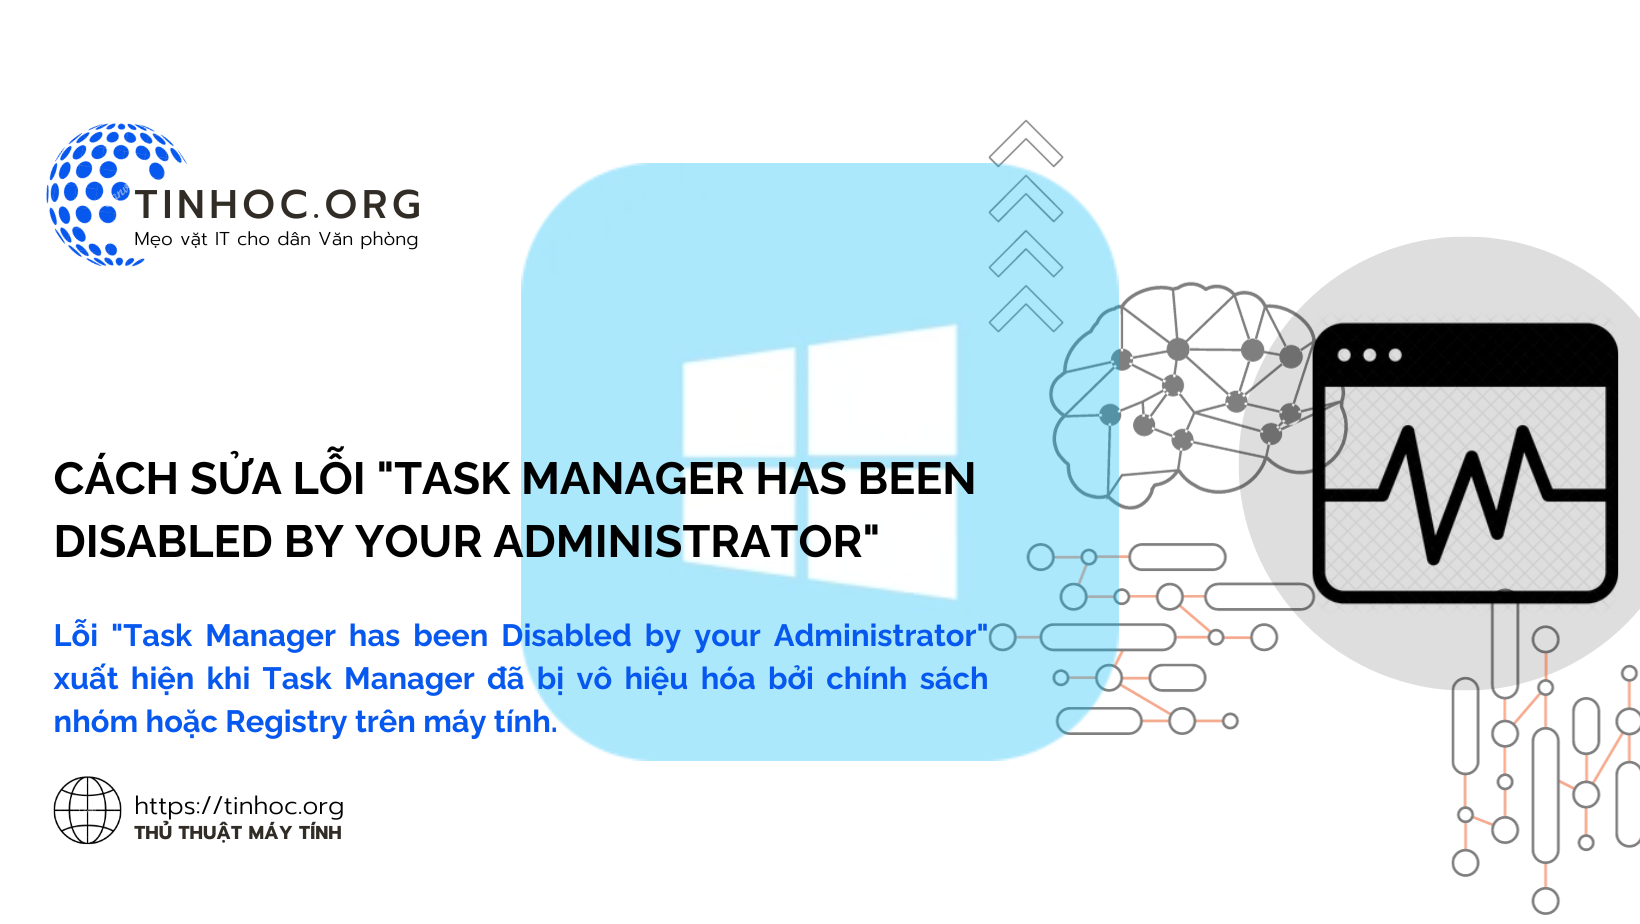 Lỗi "Task Manager has been Disabled by your Administrator" xuất hiện khi Task Manager đã bị vô hiệu hóa bởi chính sách nhóm hoặc Registry trên máy tính.